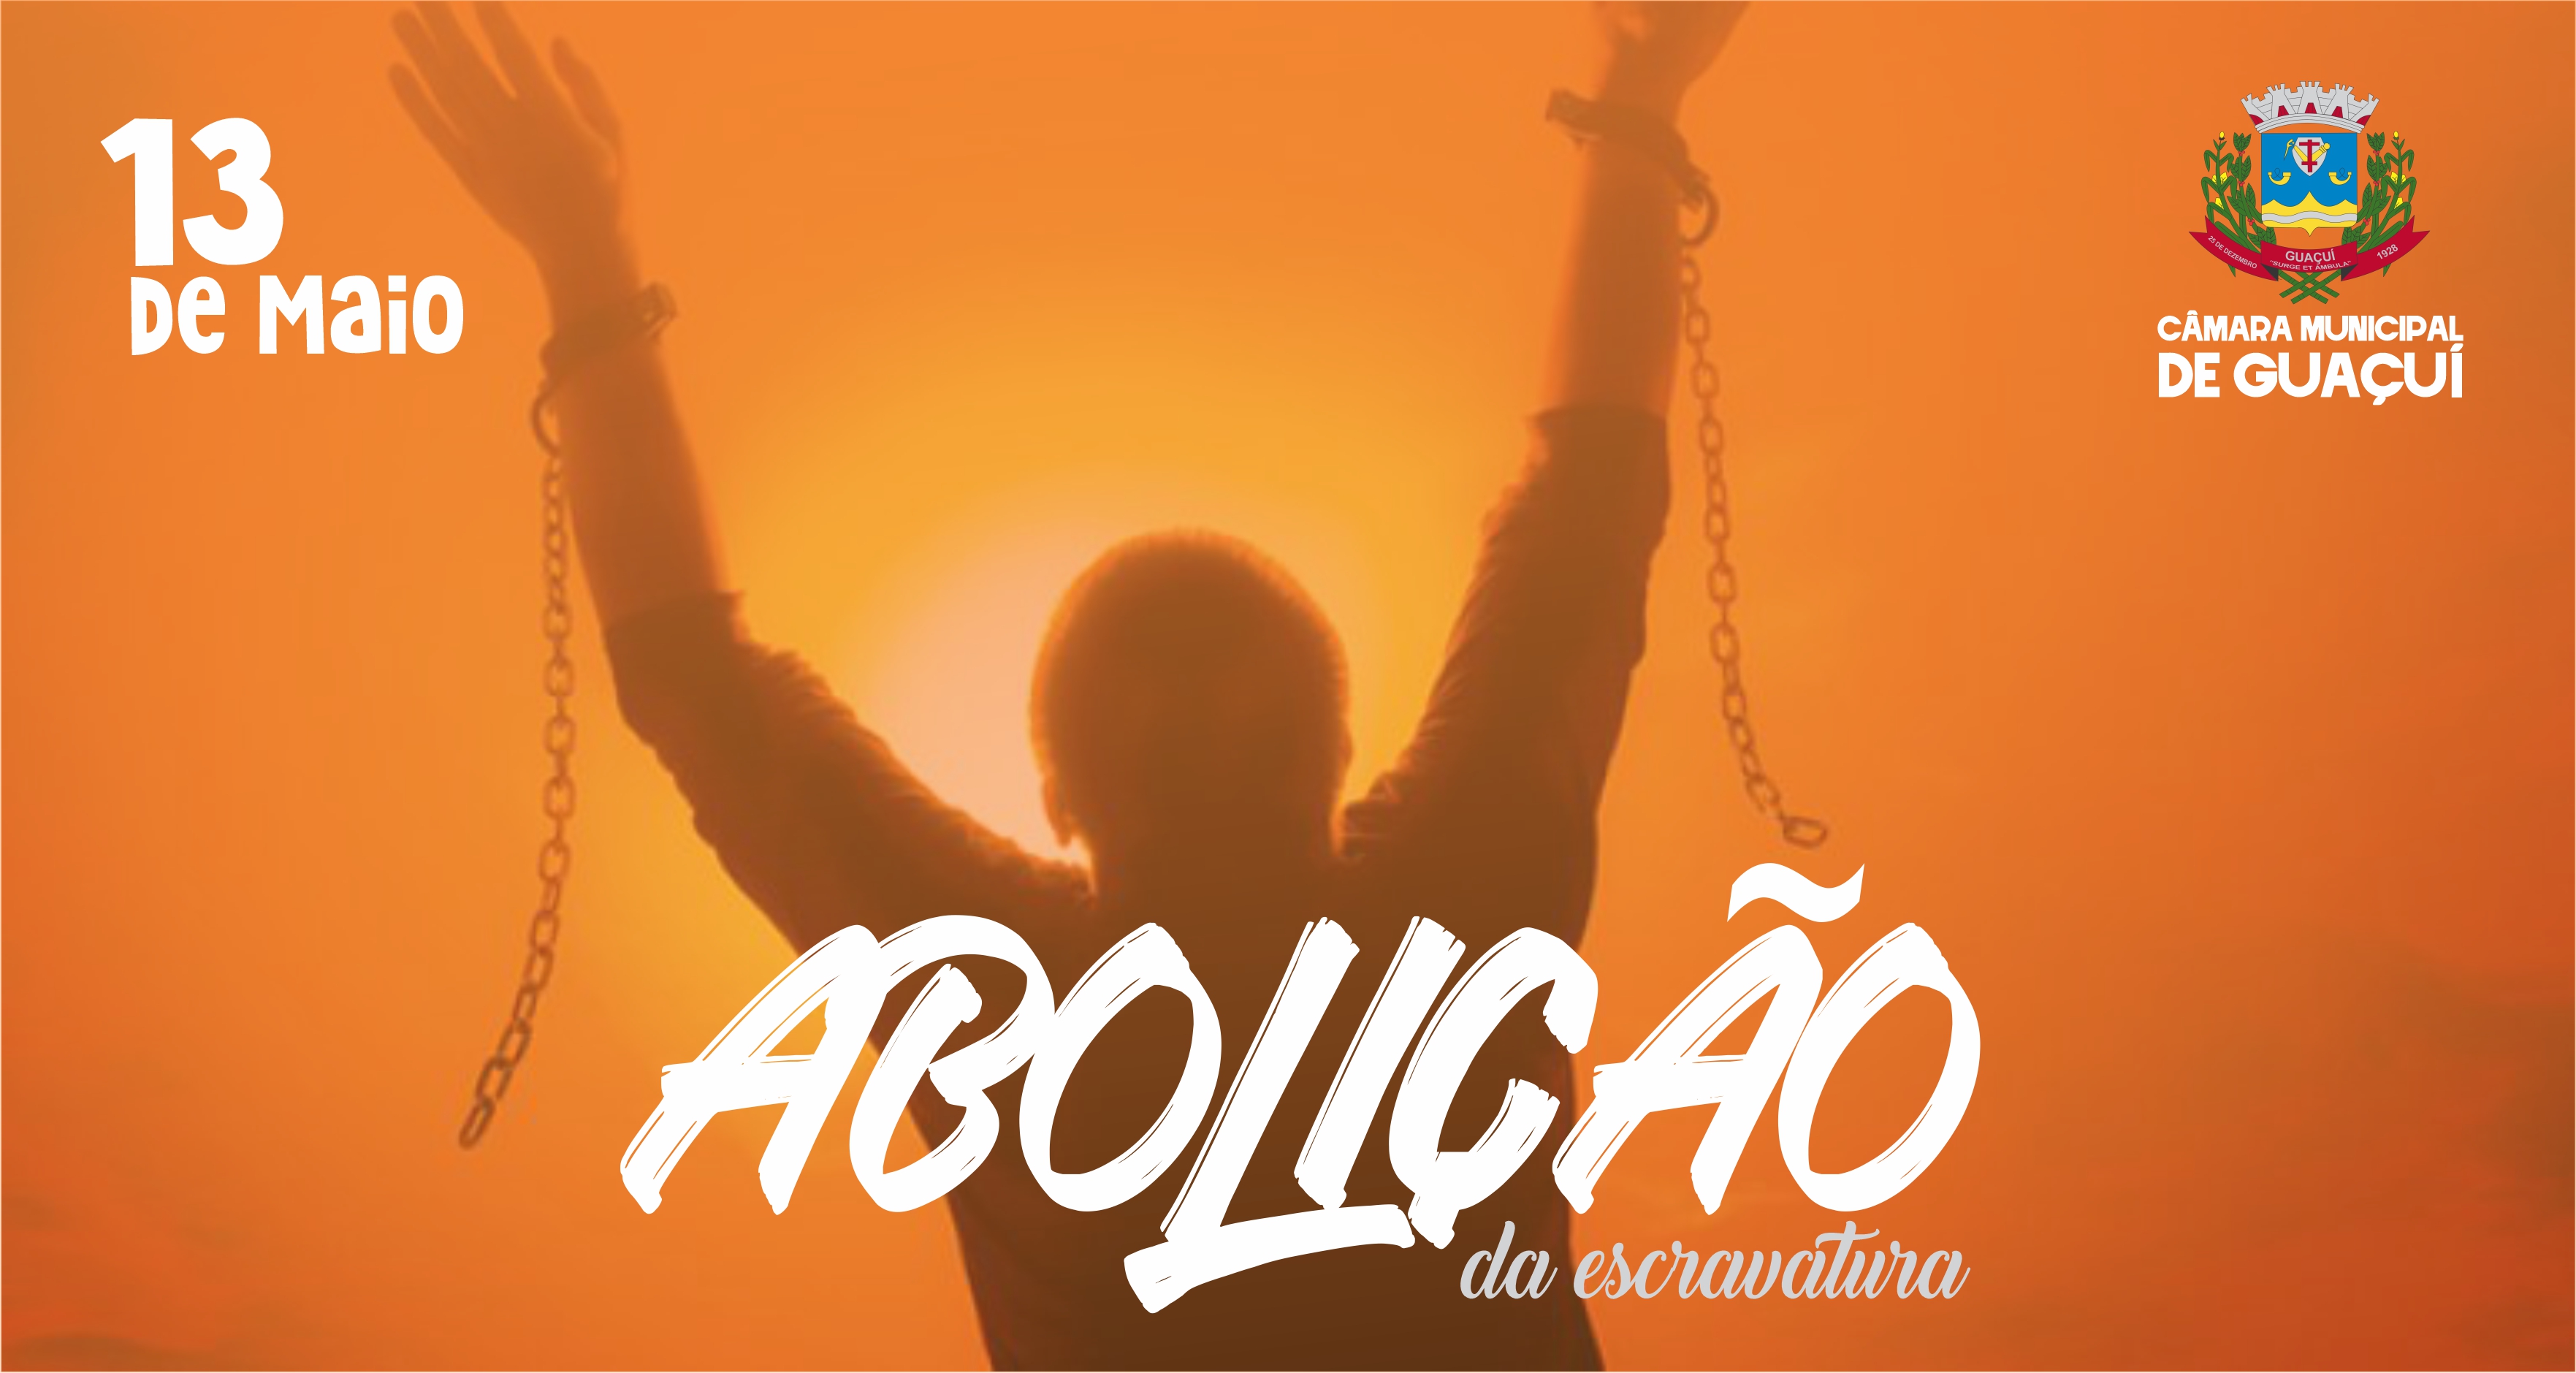 13 DE MAIO - DIA DA ABOLIÇÃO DA ESCRAVATURA.